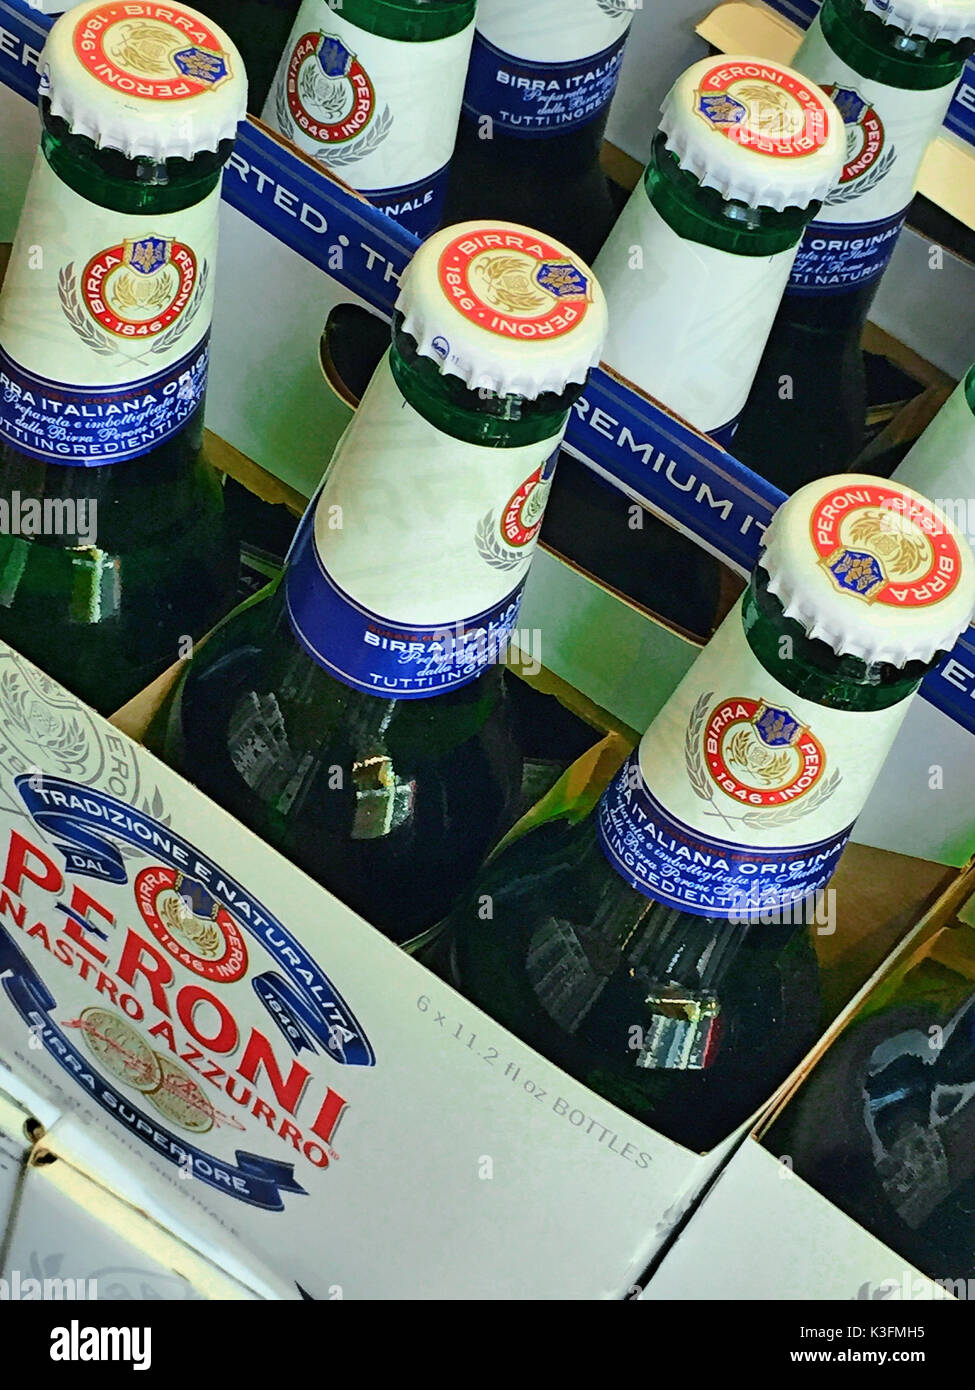 Les bouteilles de bière italienne Peroni, NYC, USA Banque D'Images